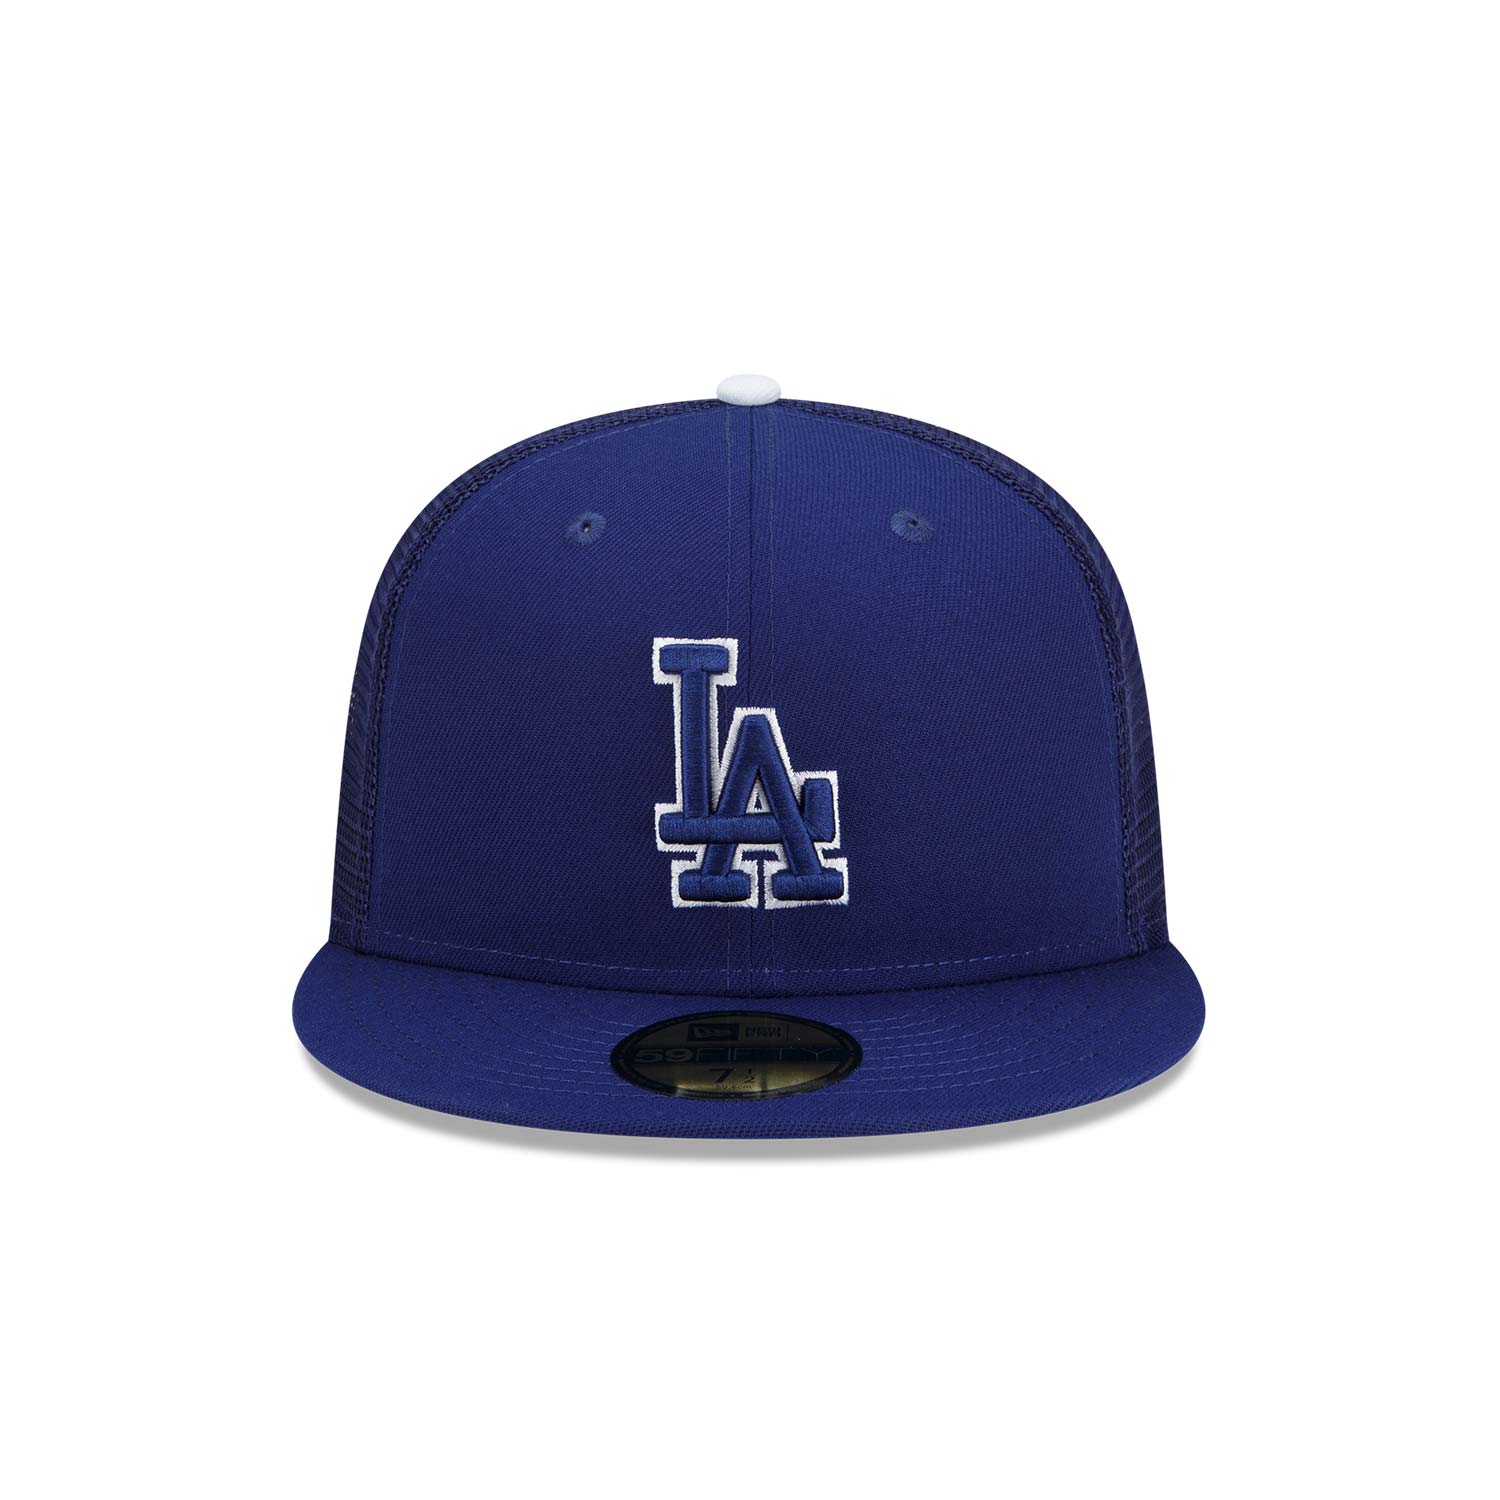 LA Dodgers MLB Batting Practice Blue 59FIFTY Cap